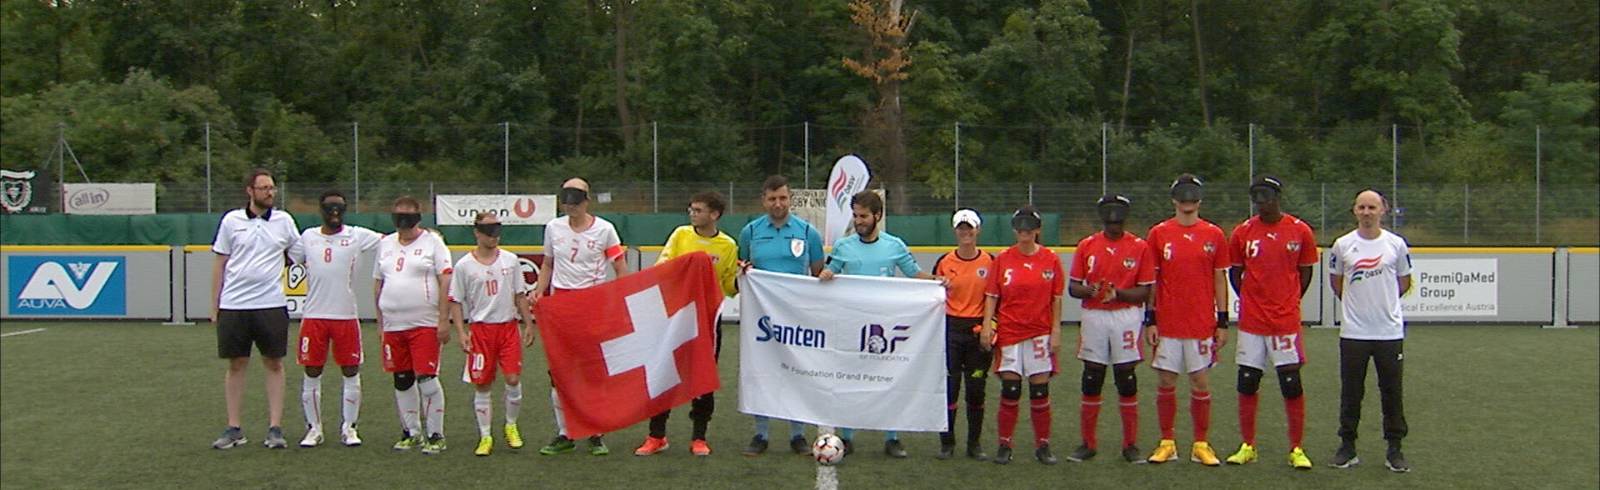 Blindenfußball: Österreich unterliegt Schweiz